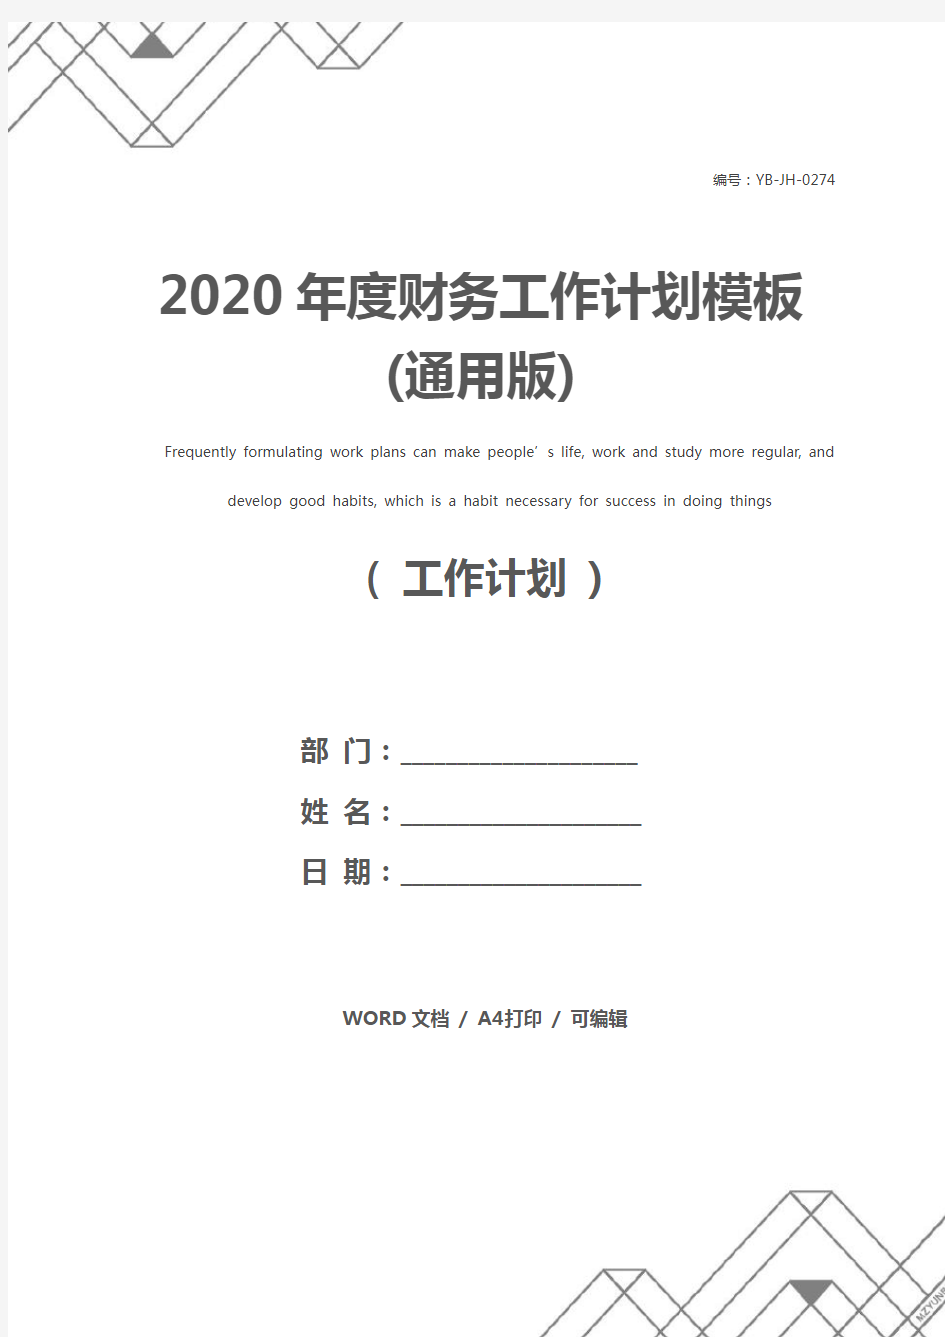 2020年度财务工作计划模板(通用版)